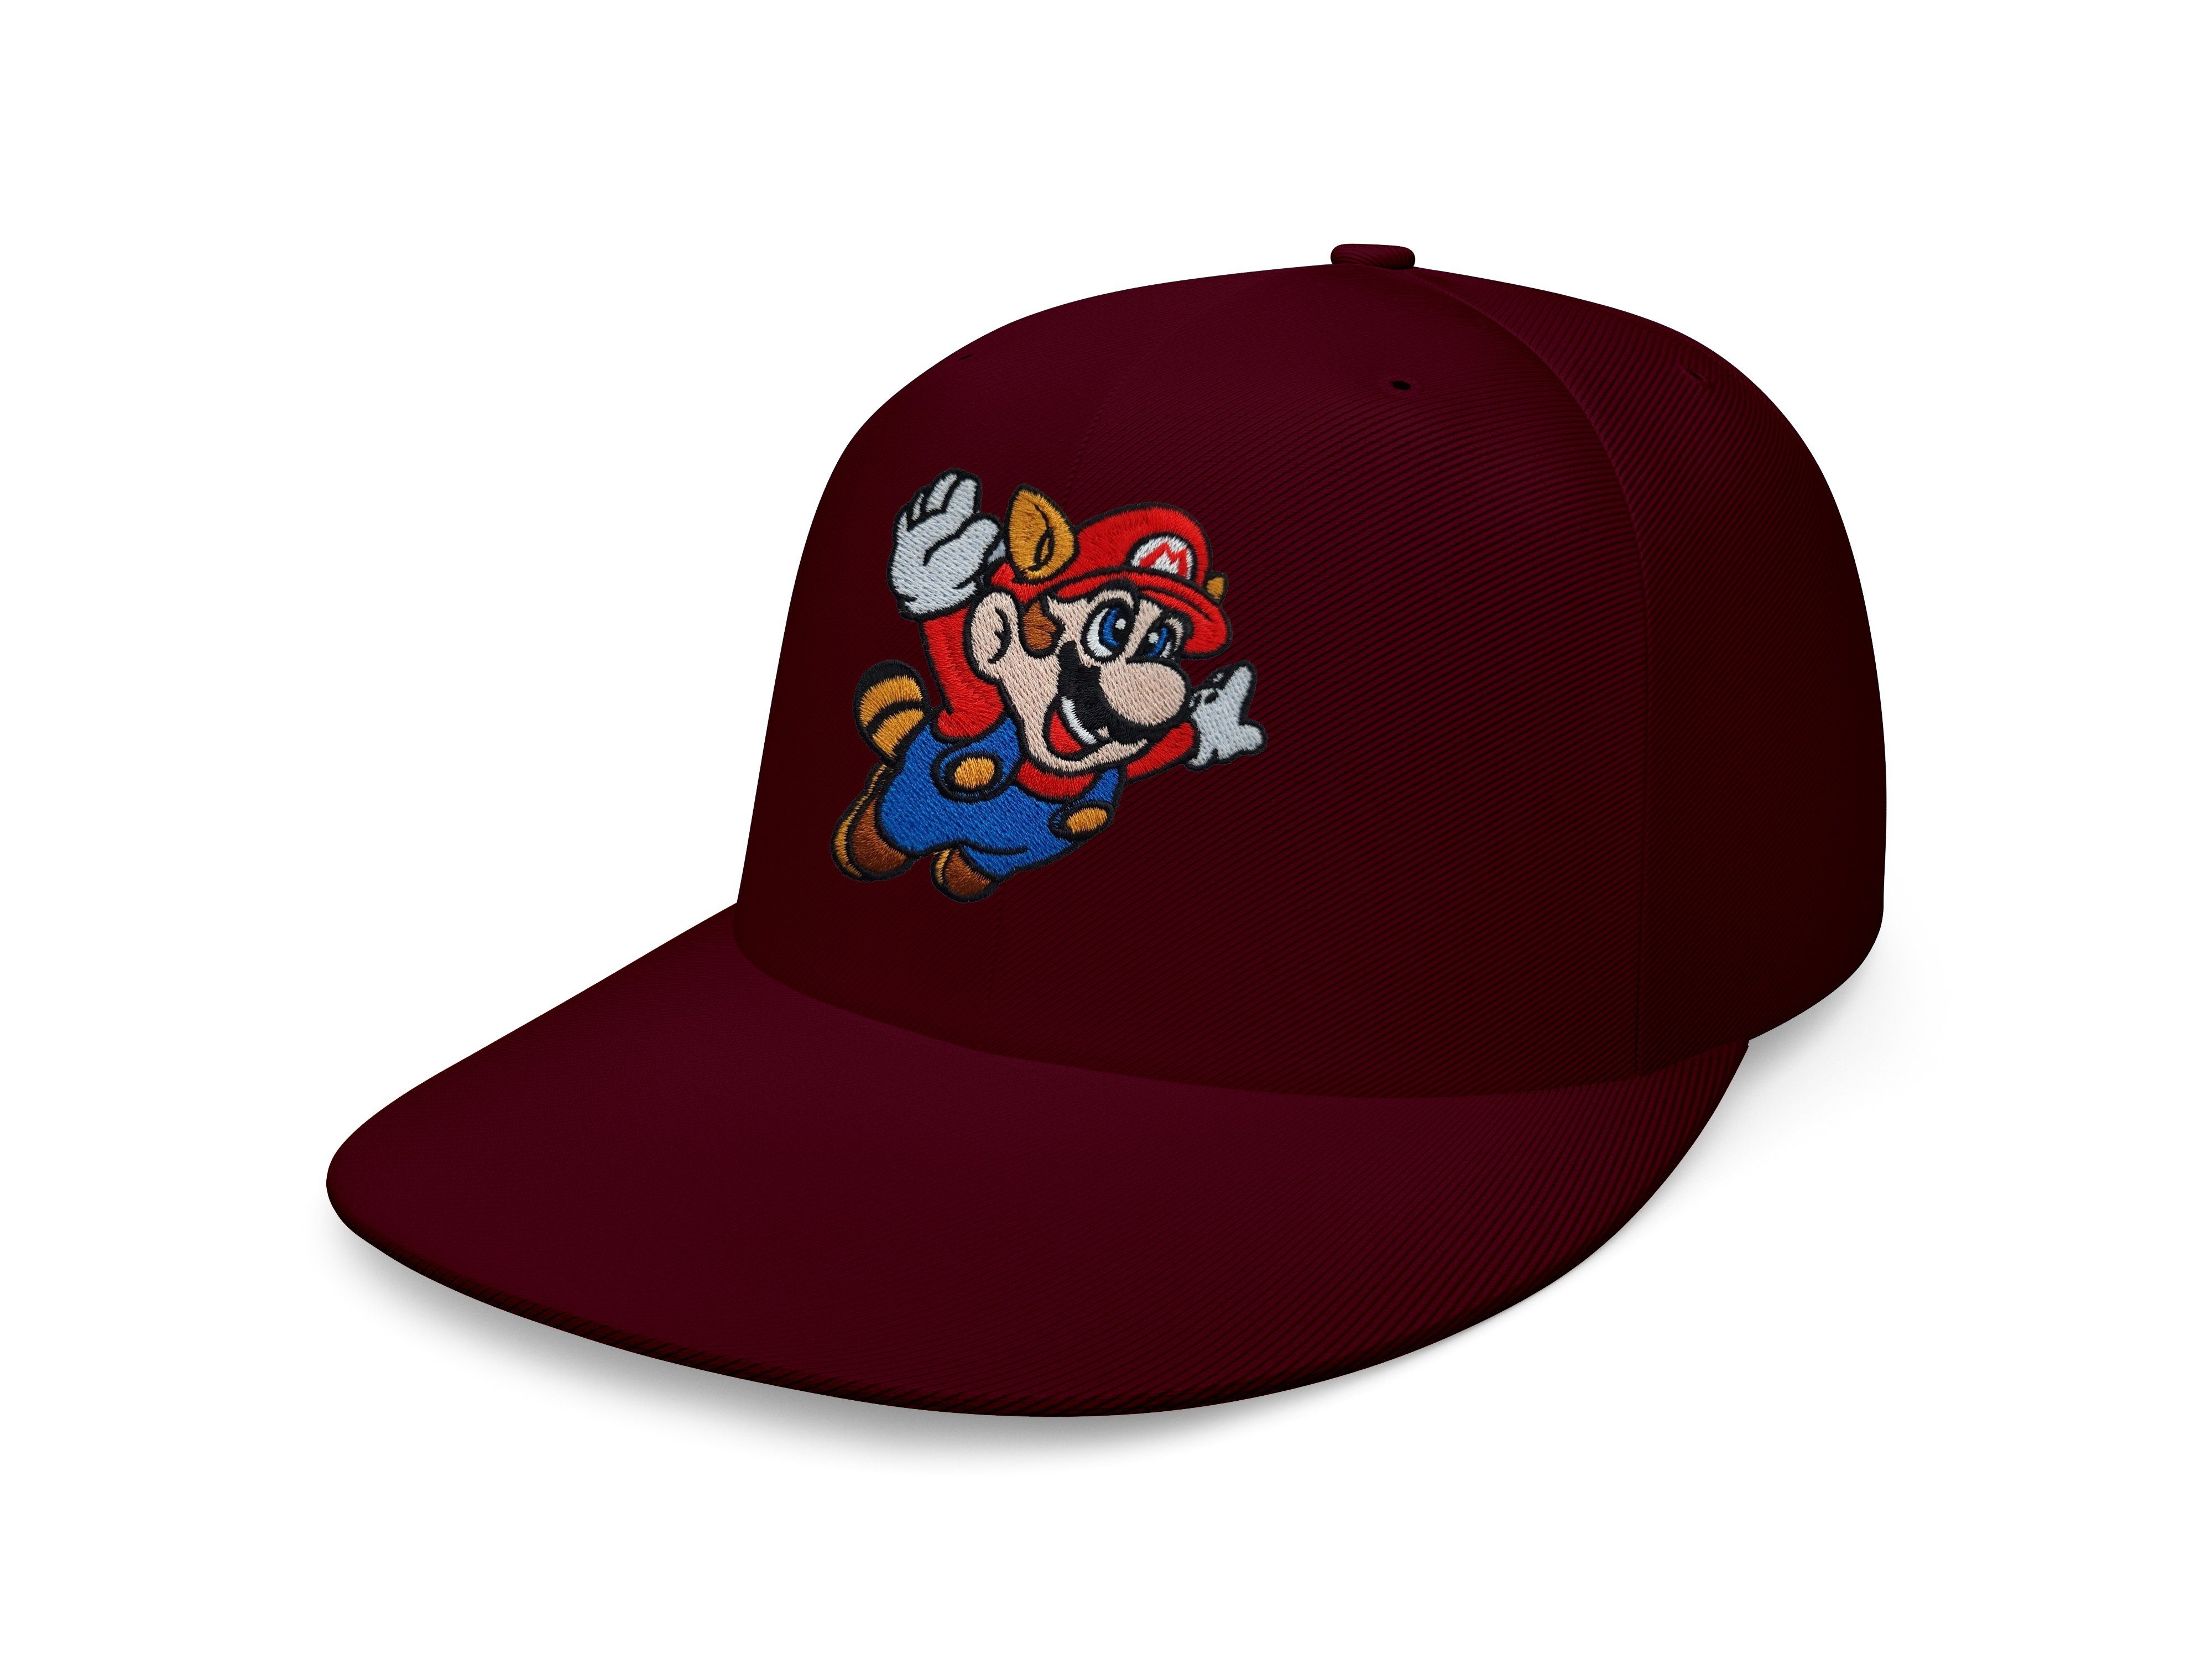 Cap Nintendo Fligh Mario Brownie Burgund Luigi Stick & Unisex Blondie Erwachsene Patch Snapback Baseball